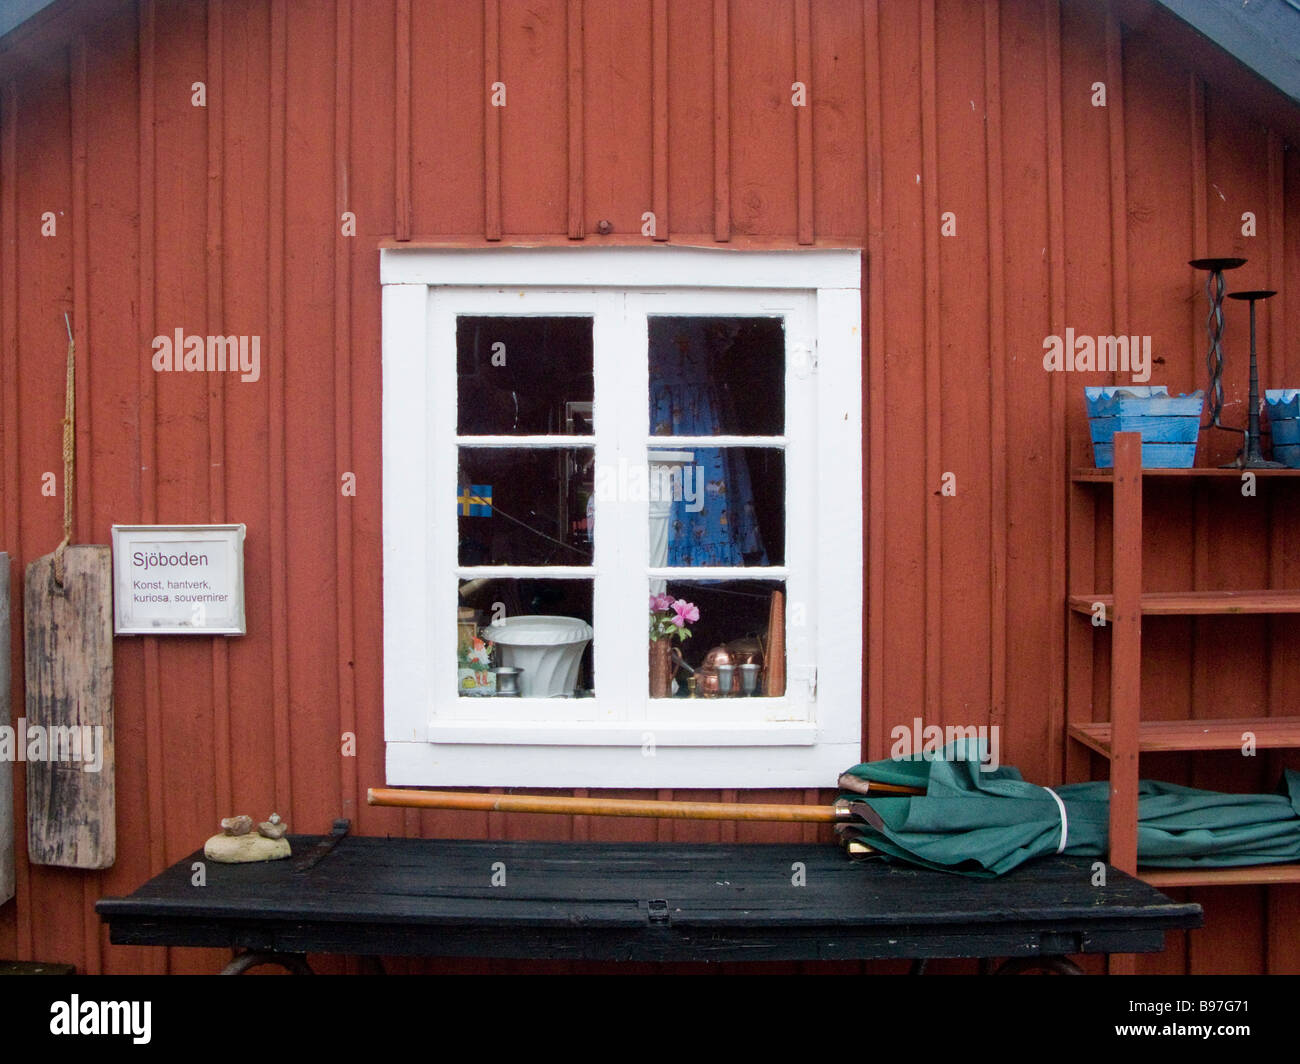 Window of a turistshop in Byxelkrok, Oland Sweden Stock Photo